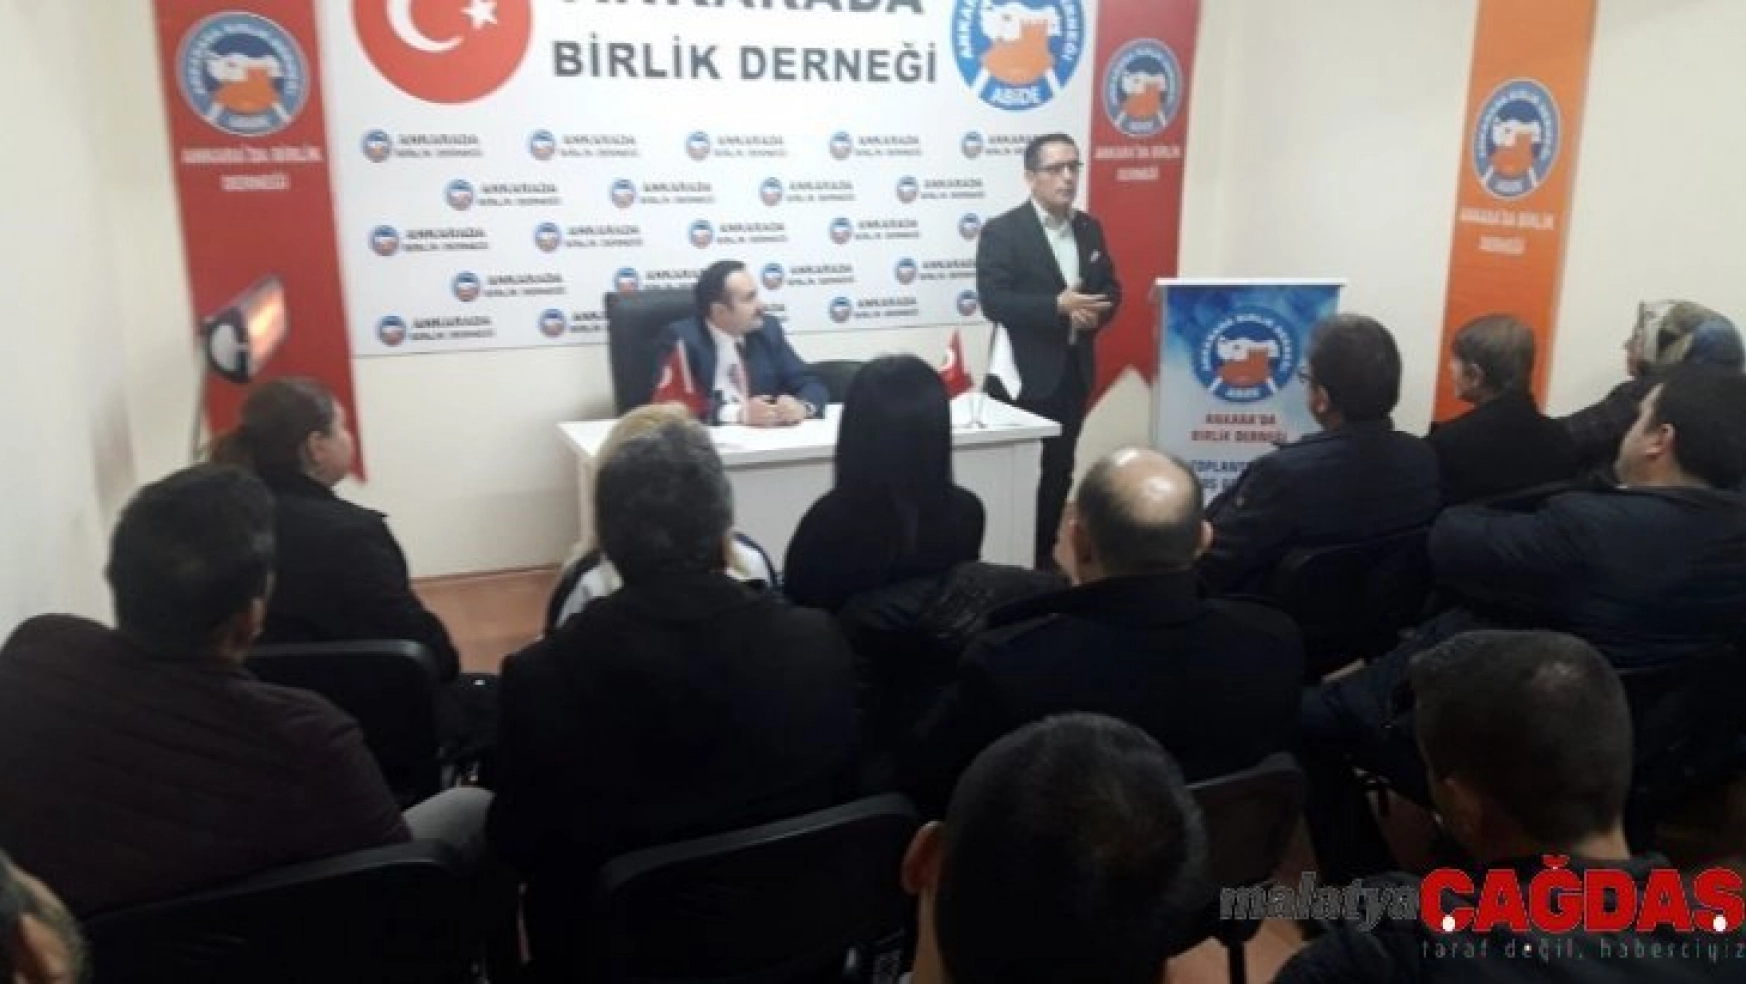 Ankara'da Birlik Derneği'nden 'Ağız ve Diş Sağlığı' konulu söyleşi